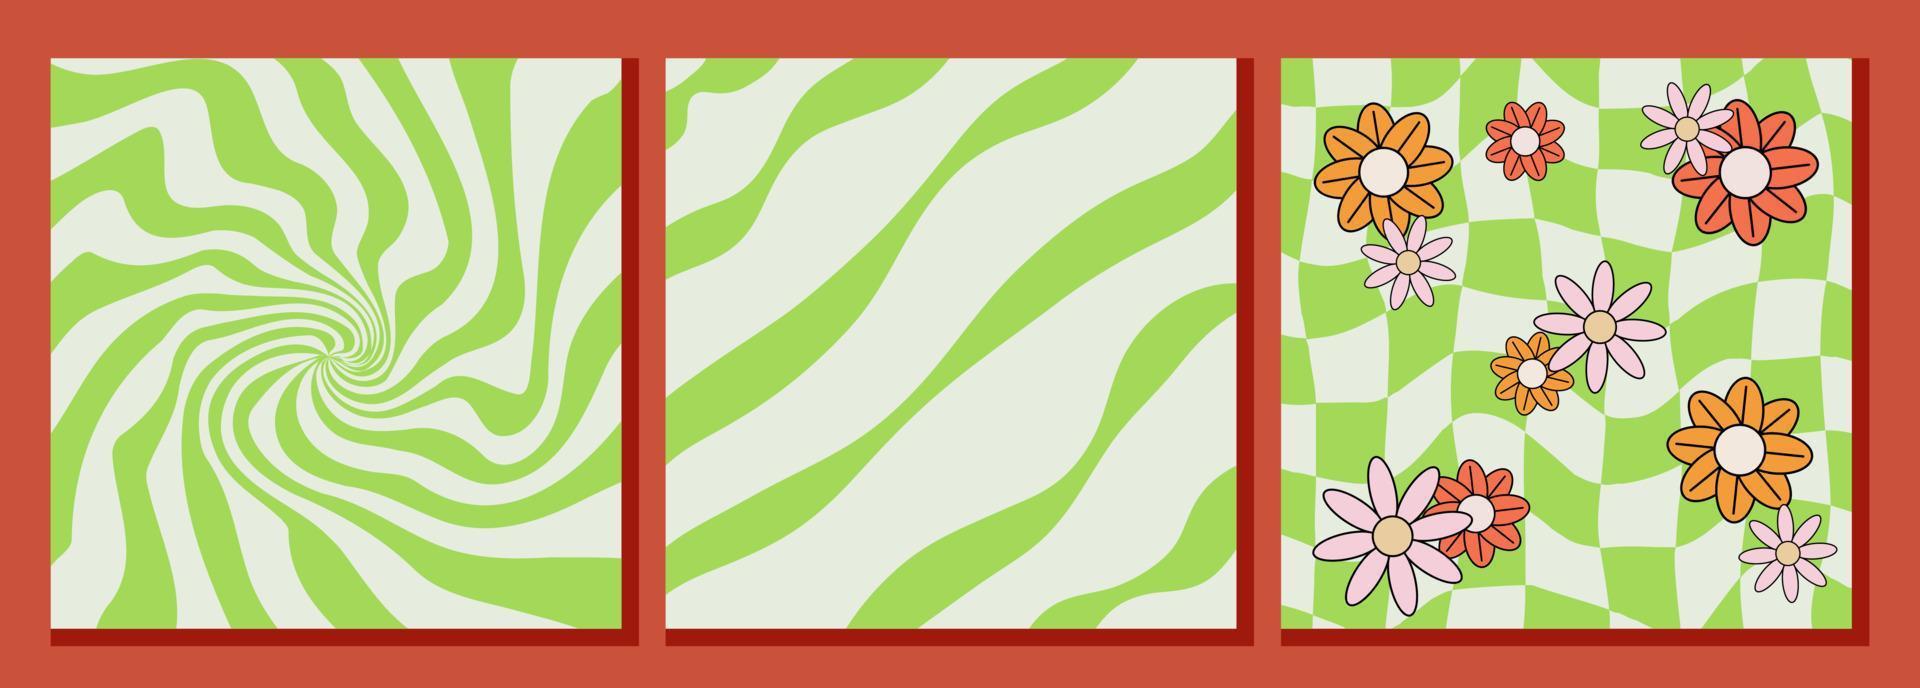 Trois sensationnel modèles, vert décors avec déformé spirale, diagonale lignes et échecs planche avec fleurs, vecteur rétro arrière-plans dans Années 1970 style.